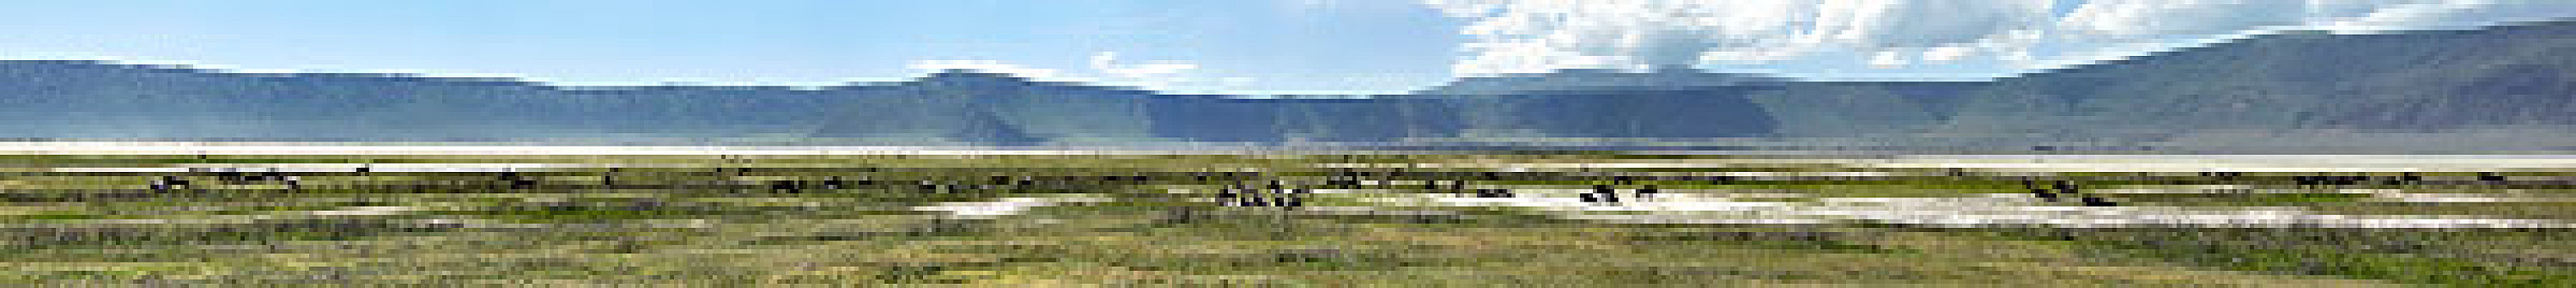 全景,恩戈罗恩戈罗火山口,恩格罗恩格罗,保护区,坦桑尼亚,非洲